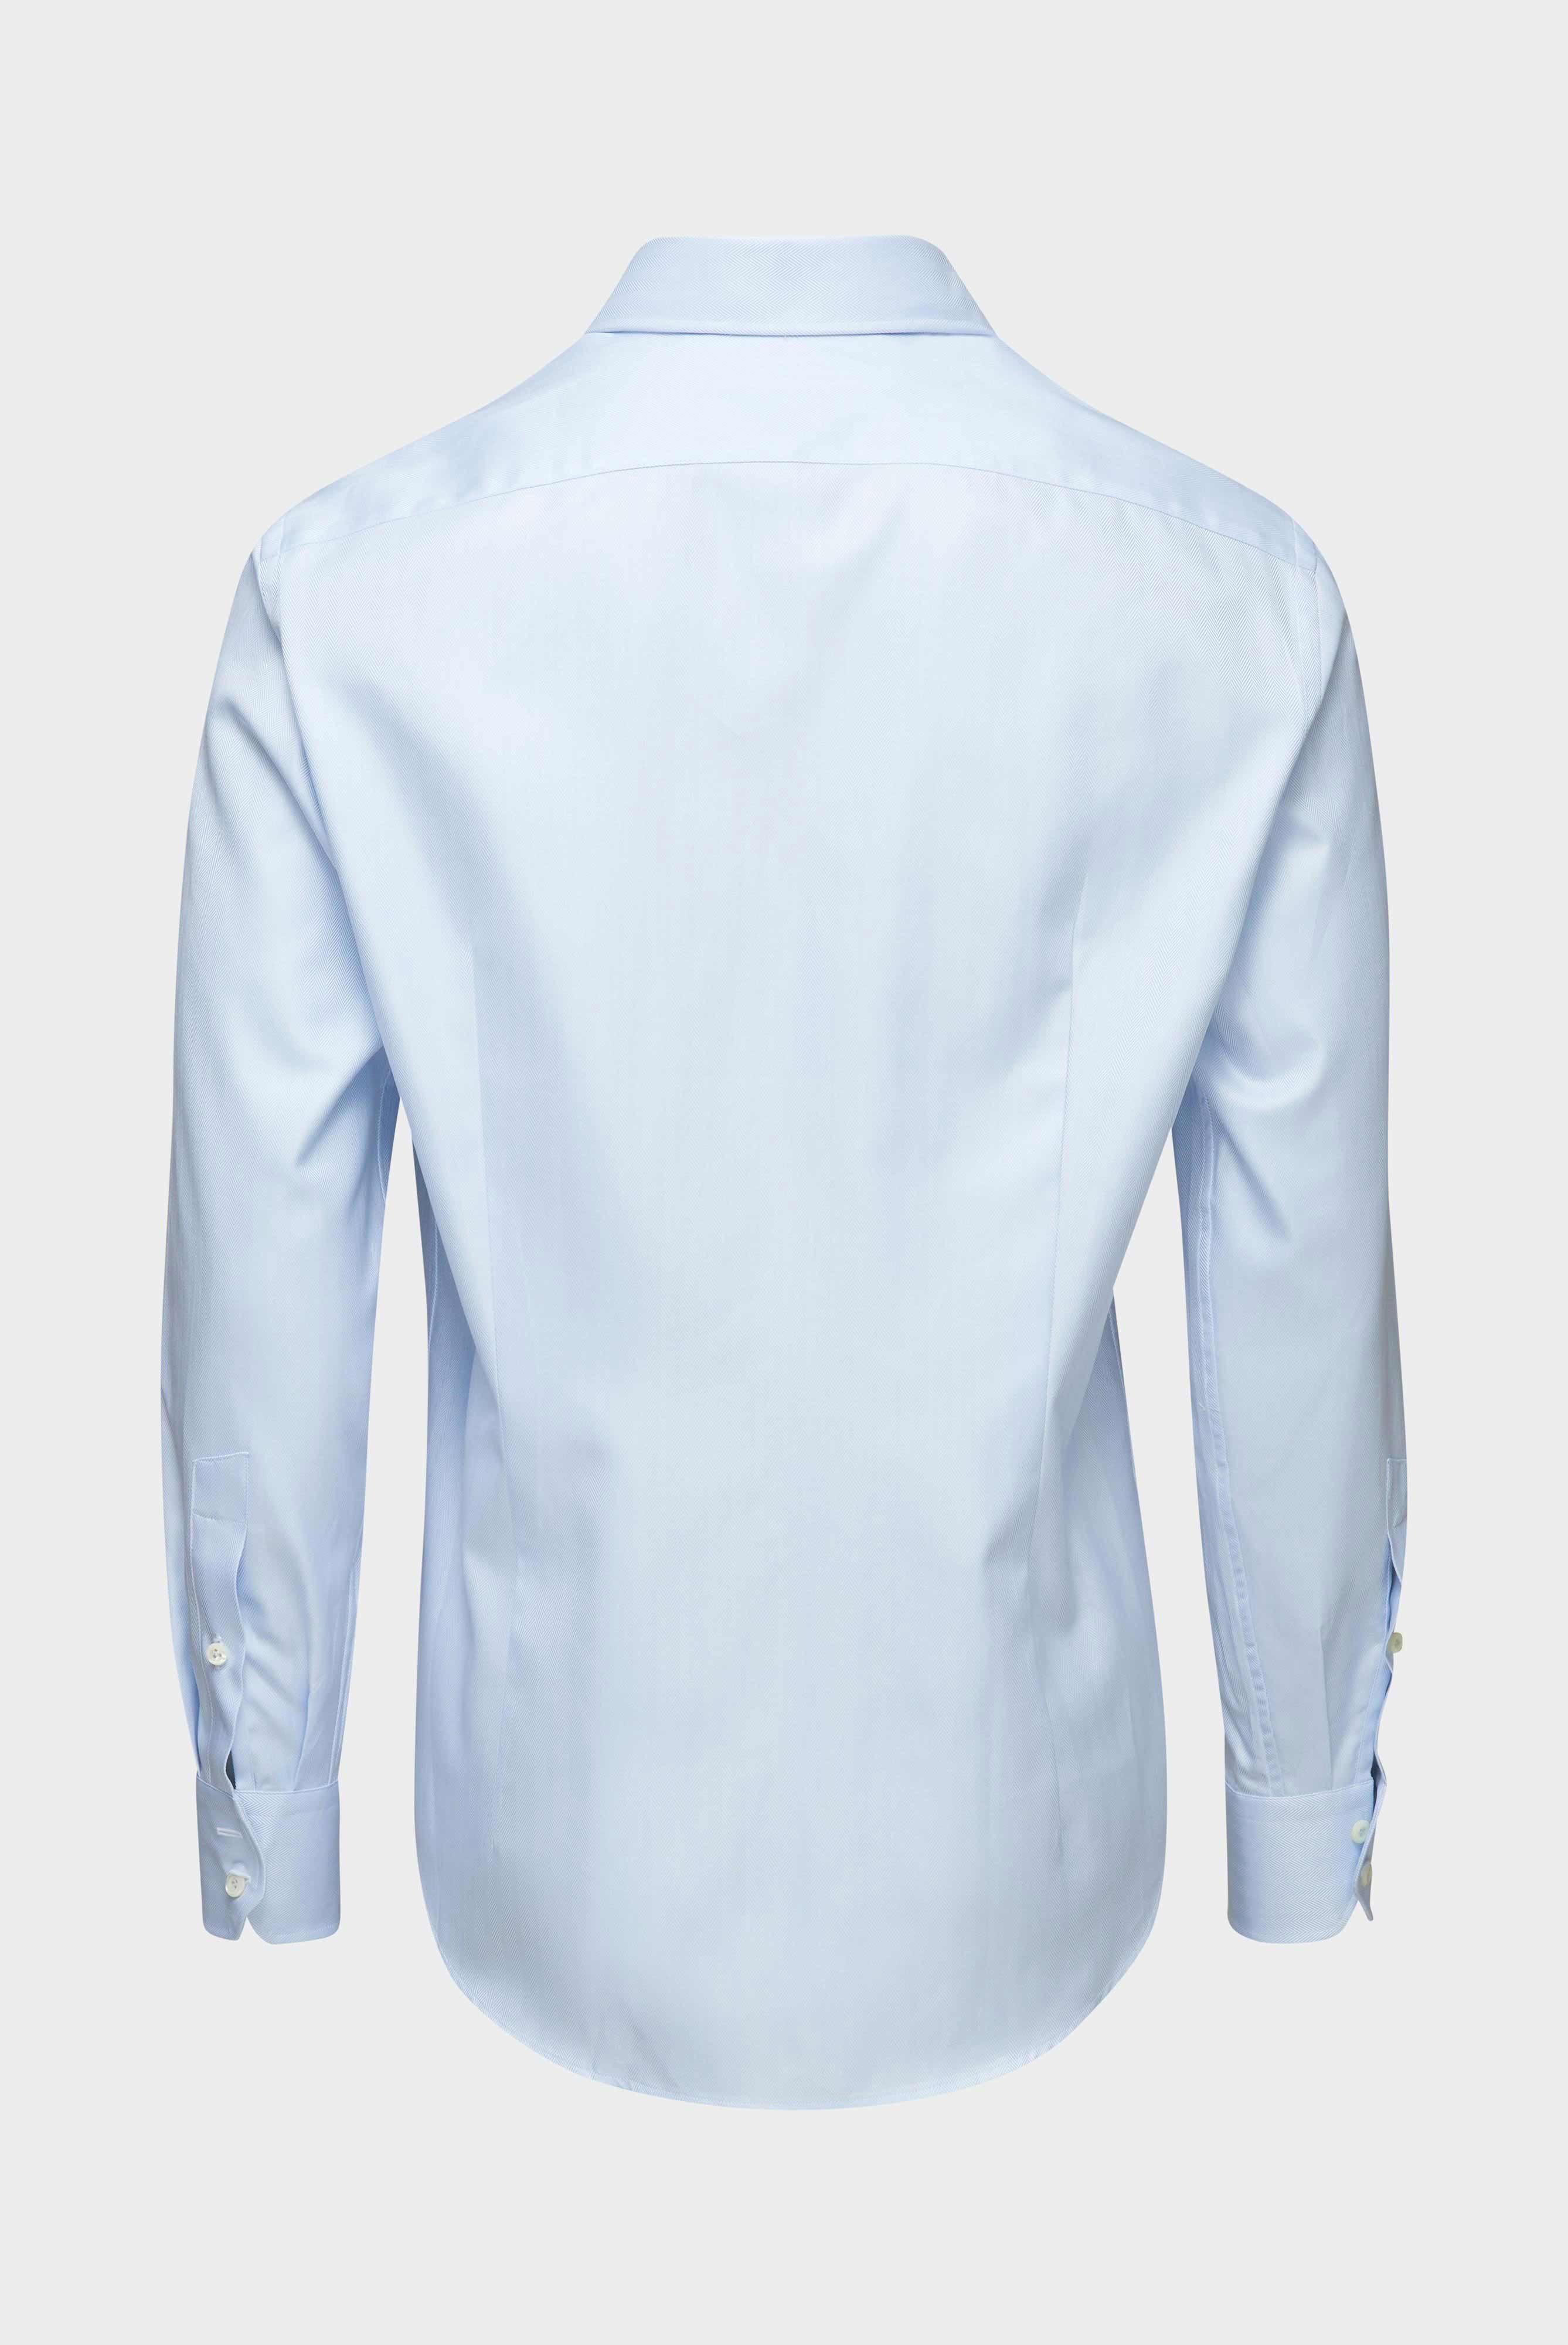 Business Hemden+Twill Hemd mit Fischgrat Tailor Fit+20.2020.AV.102501.710.37